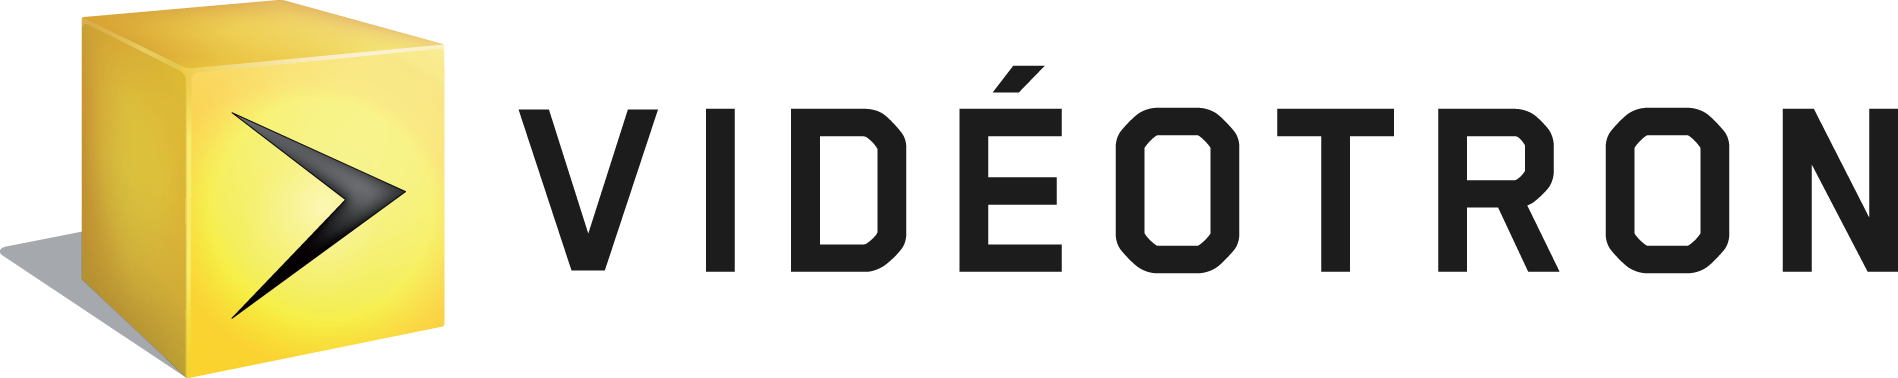 Logo de Viédotron